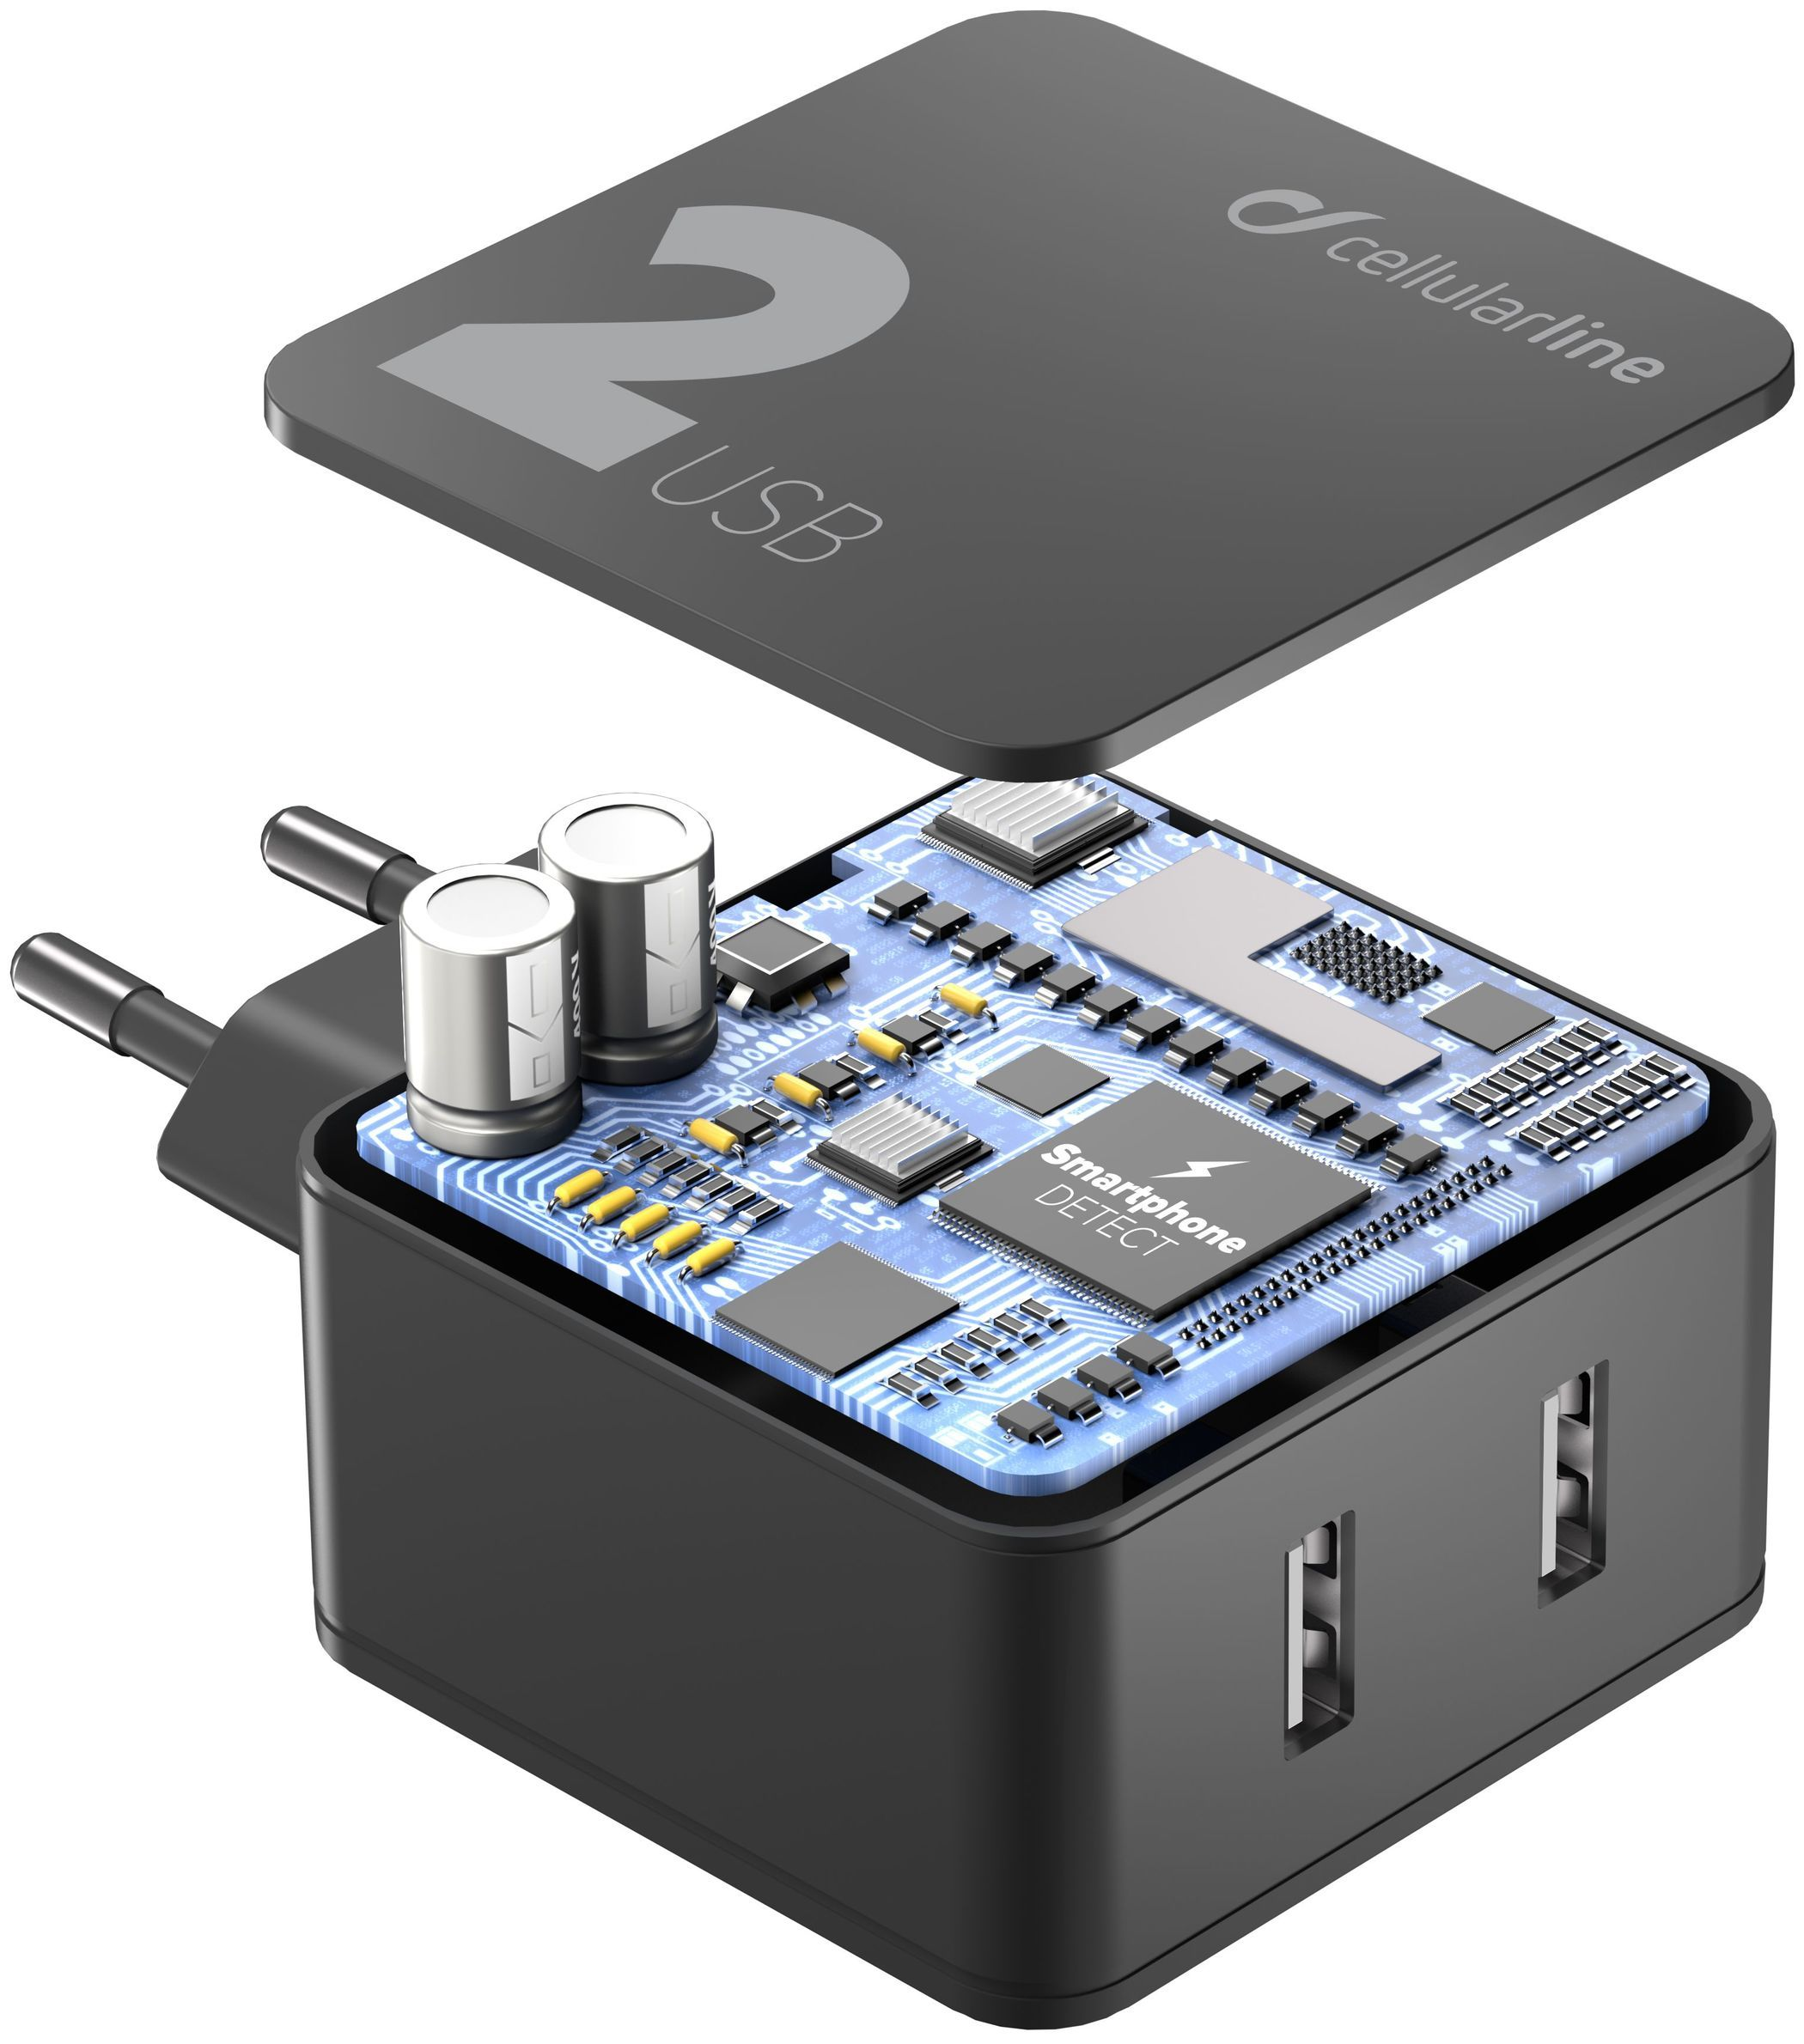 Sieťová nabíjačka CellularLine Multipower 2 s technológiou Smartphone detect, 2 x USB port, 24W, čierna